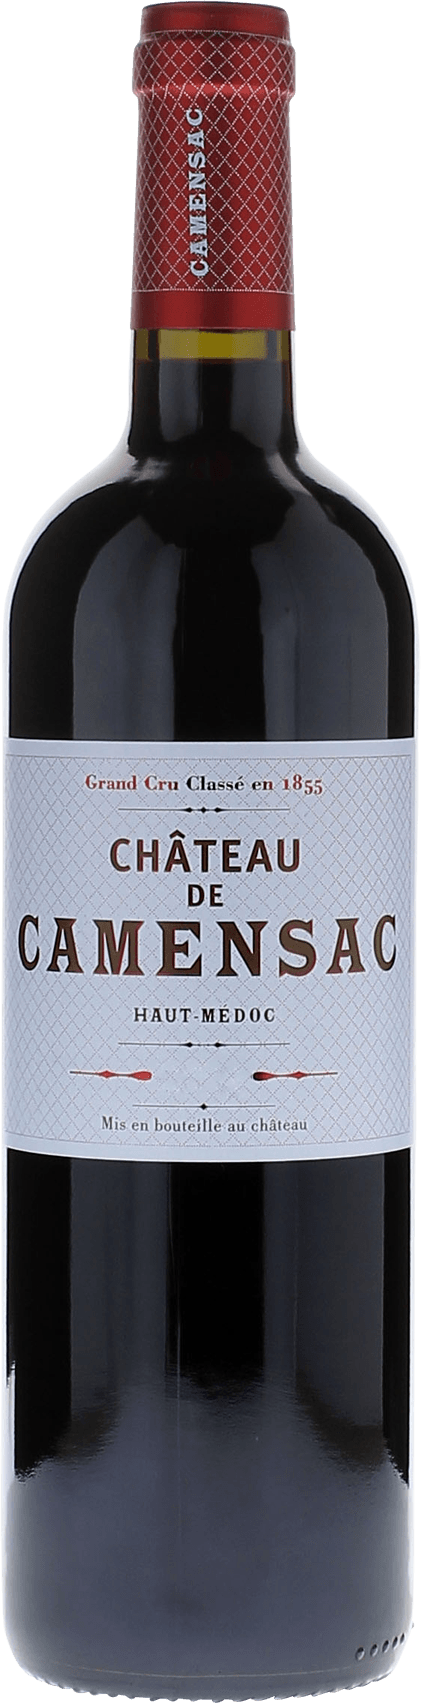 Camensac 1990 5me Grand cru class Mdoc, Bordeaux rouge